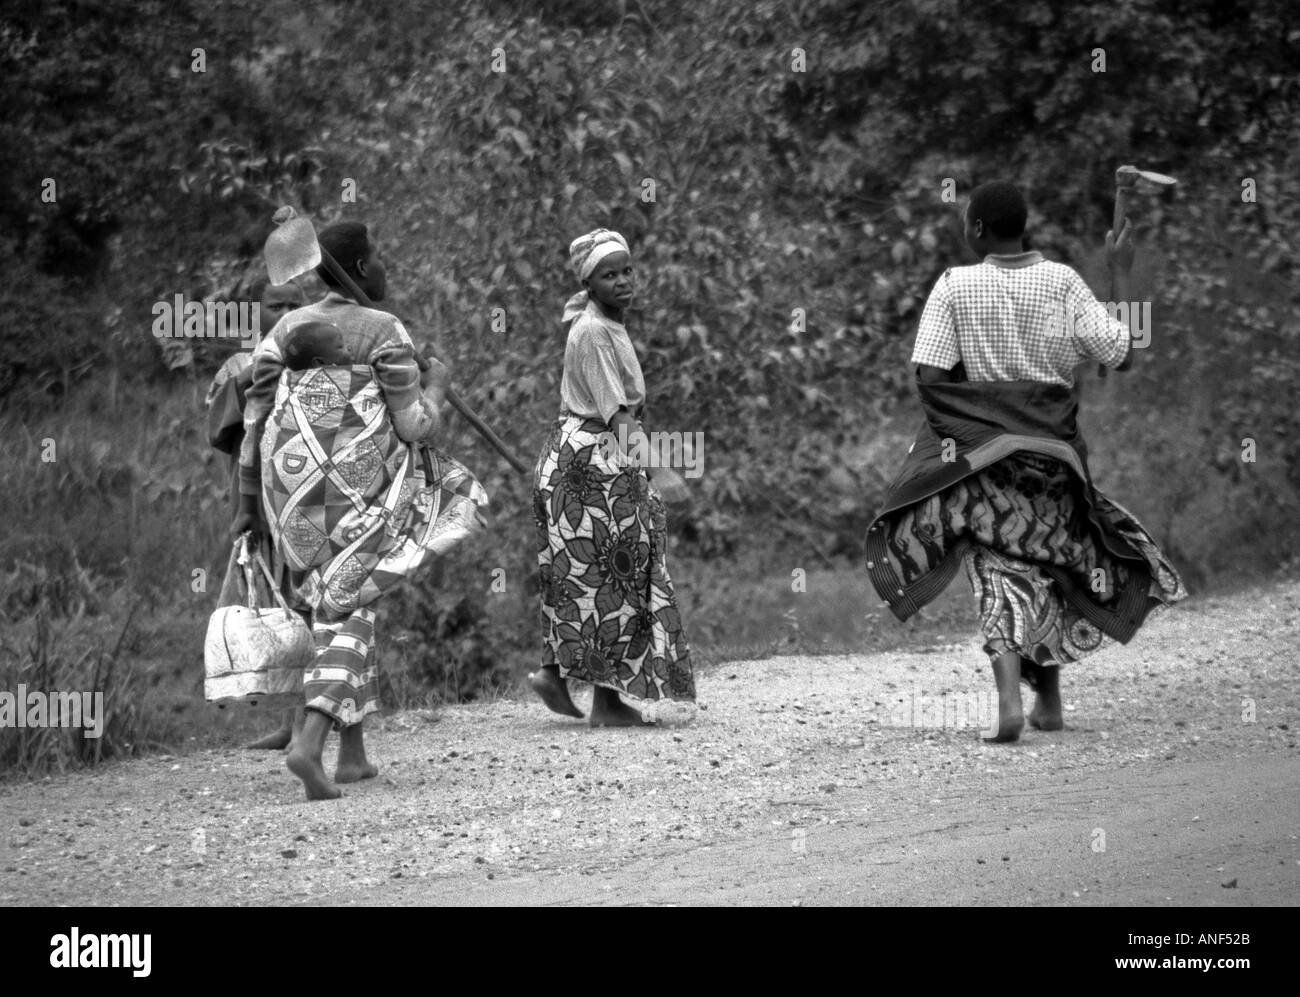 Les jeunes femmes en costume traditionnel transporter sur les épaules de l'enfant marche pied nu à Katuna Byumba Rwanda Afrique de l'Est Banque D'Images